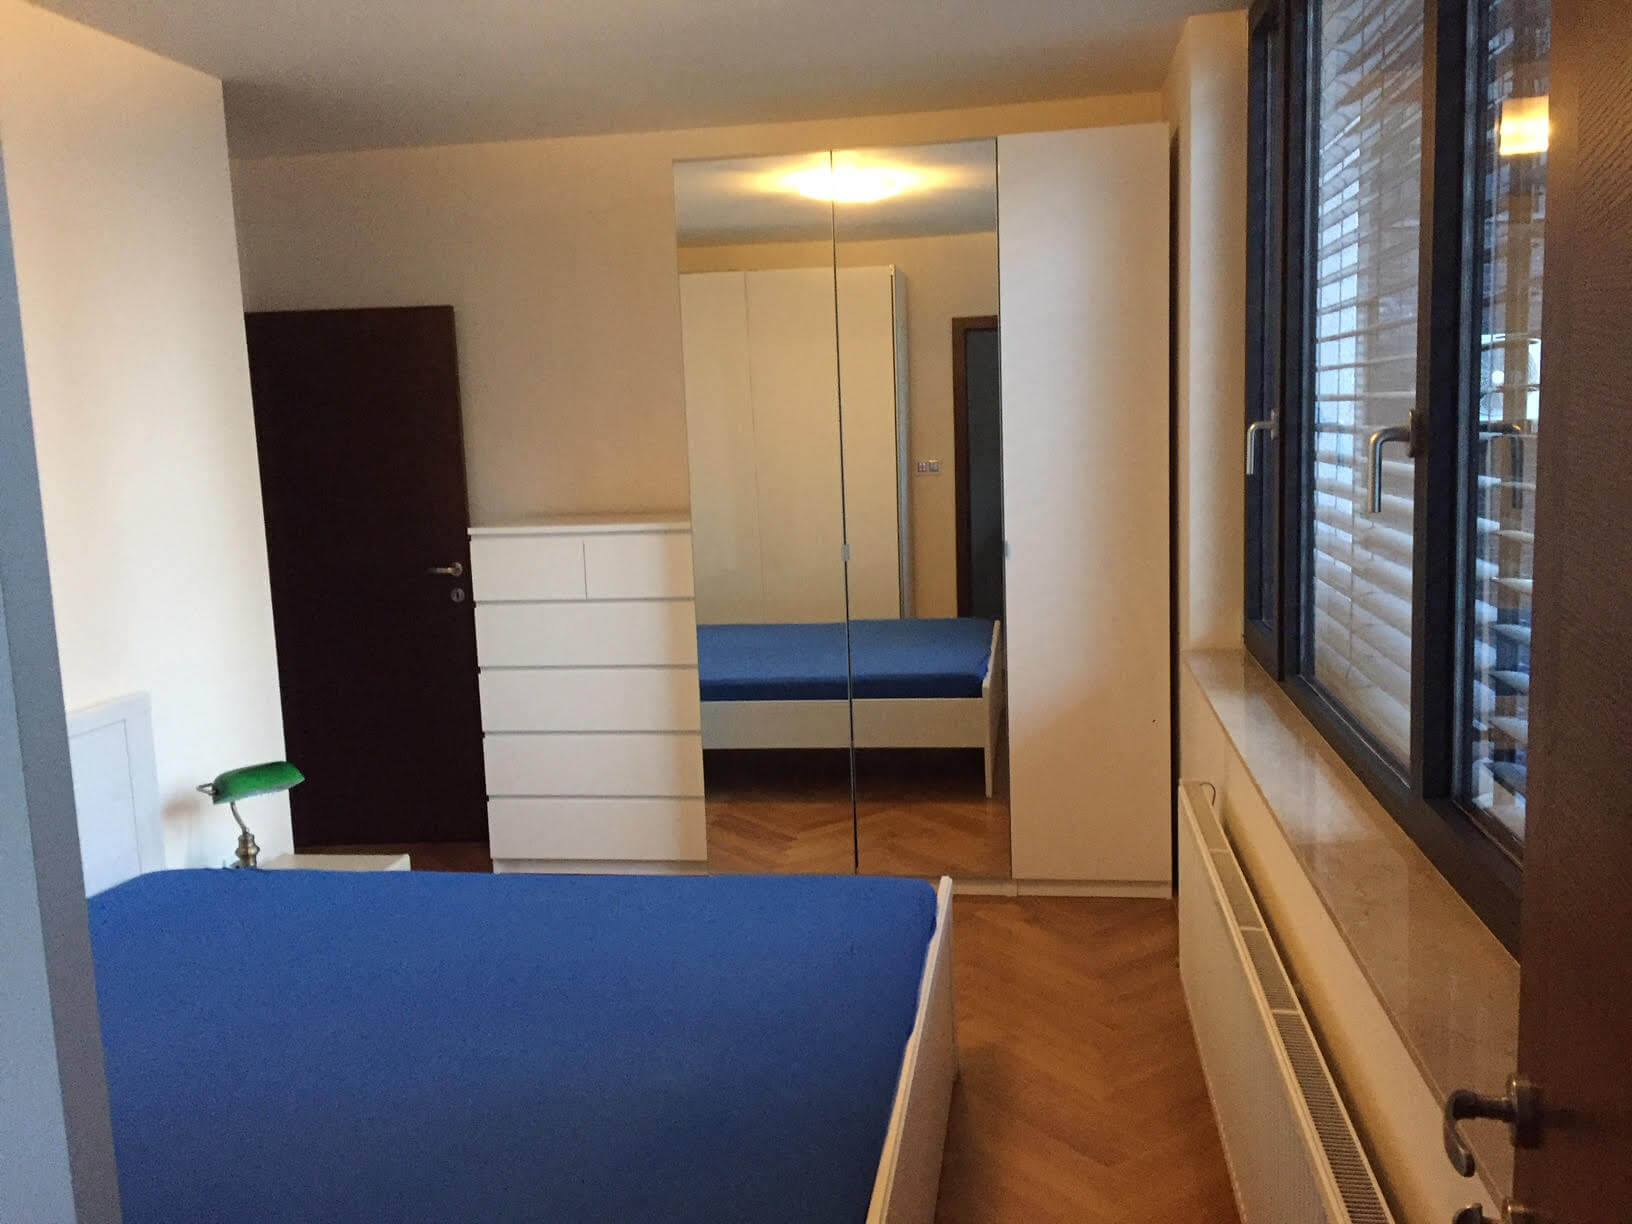 Prenajaté: Luxusný 3 izbový byt v centre BA, 88m2, Dunajská 48, balkón 6m, garážové státie,klimatizácia, krb-5